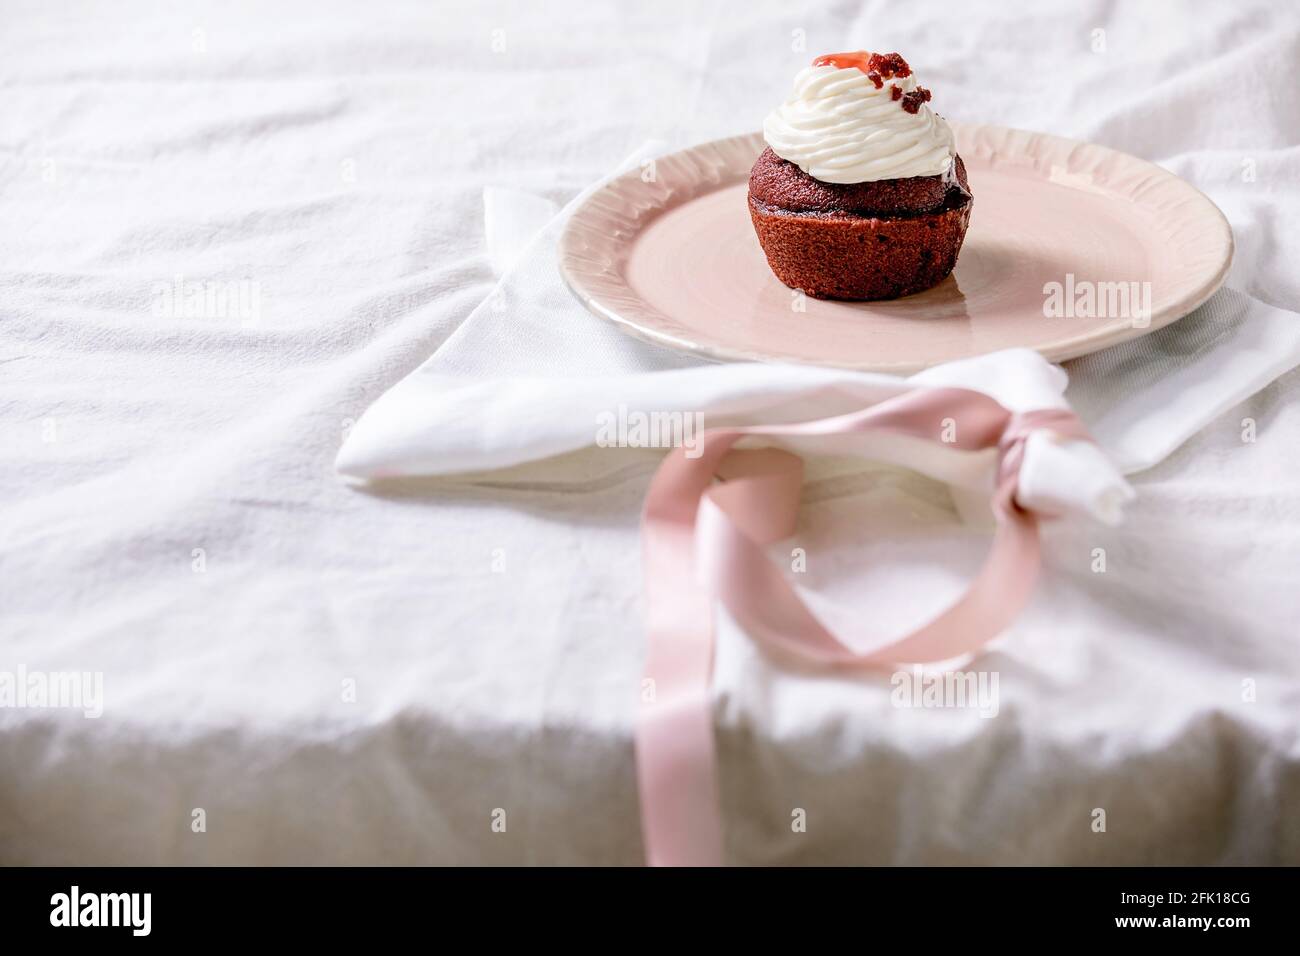 Petit gâteau en velours rouge maison avec crème fouettée sur plaque en céramique rose, serviette blanche avec ruban sur nappe blanche. Copier l'espace Banque D'Images